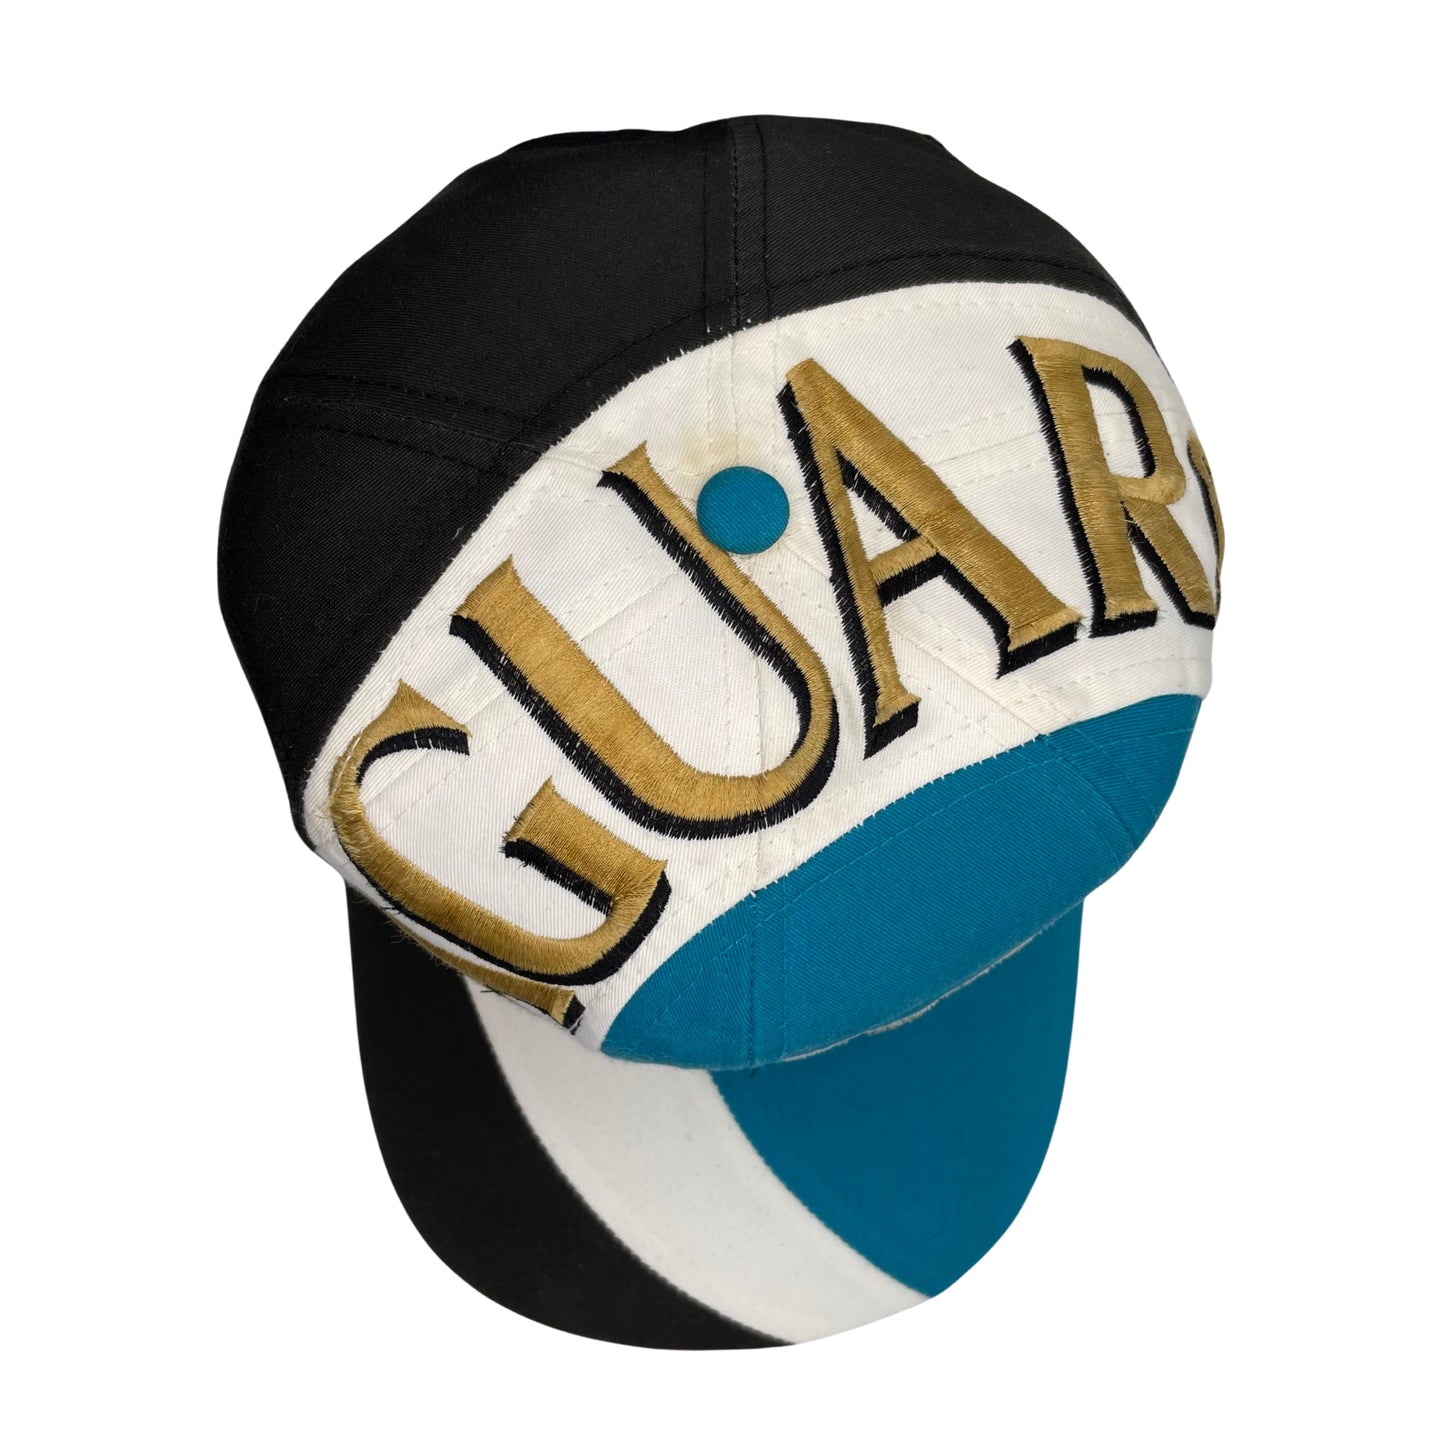 Vintage Jacksonville Jaguars banned logo "Highway" hat